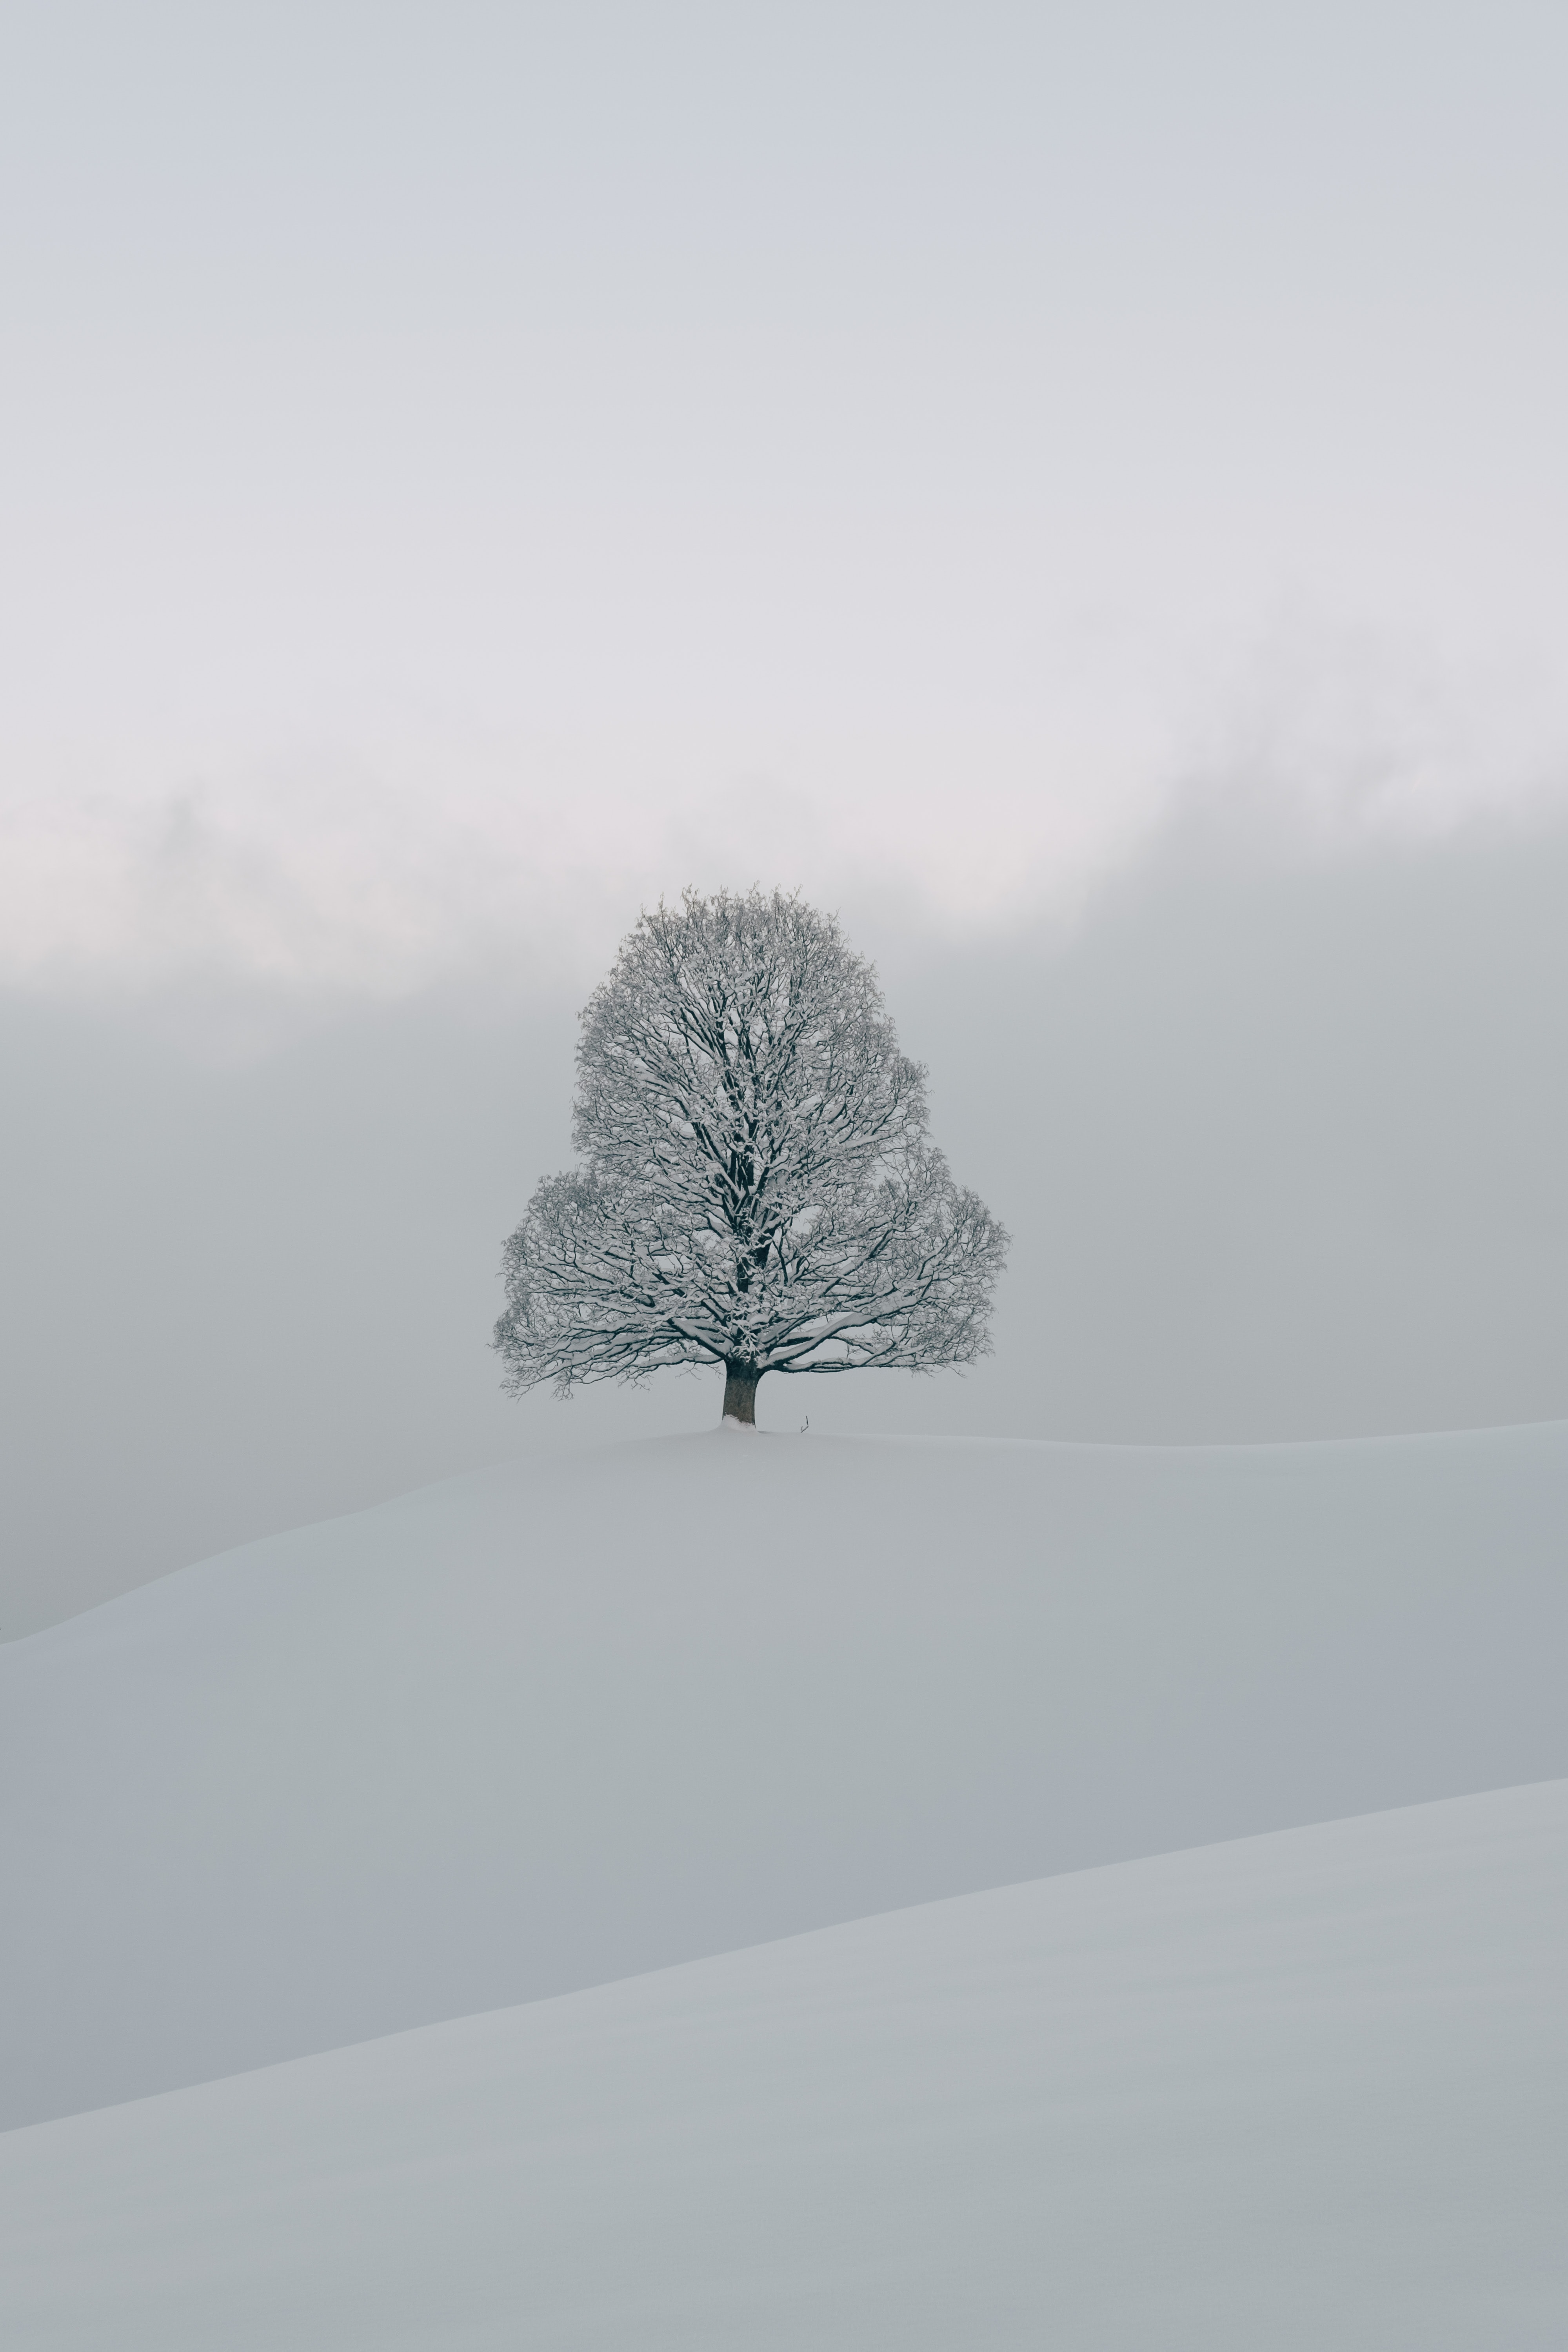 Single tree in a snowy landscape